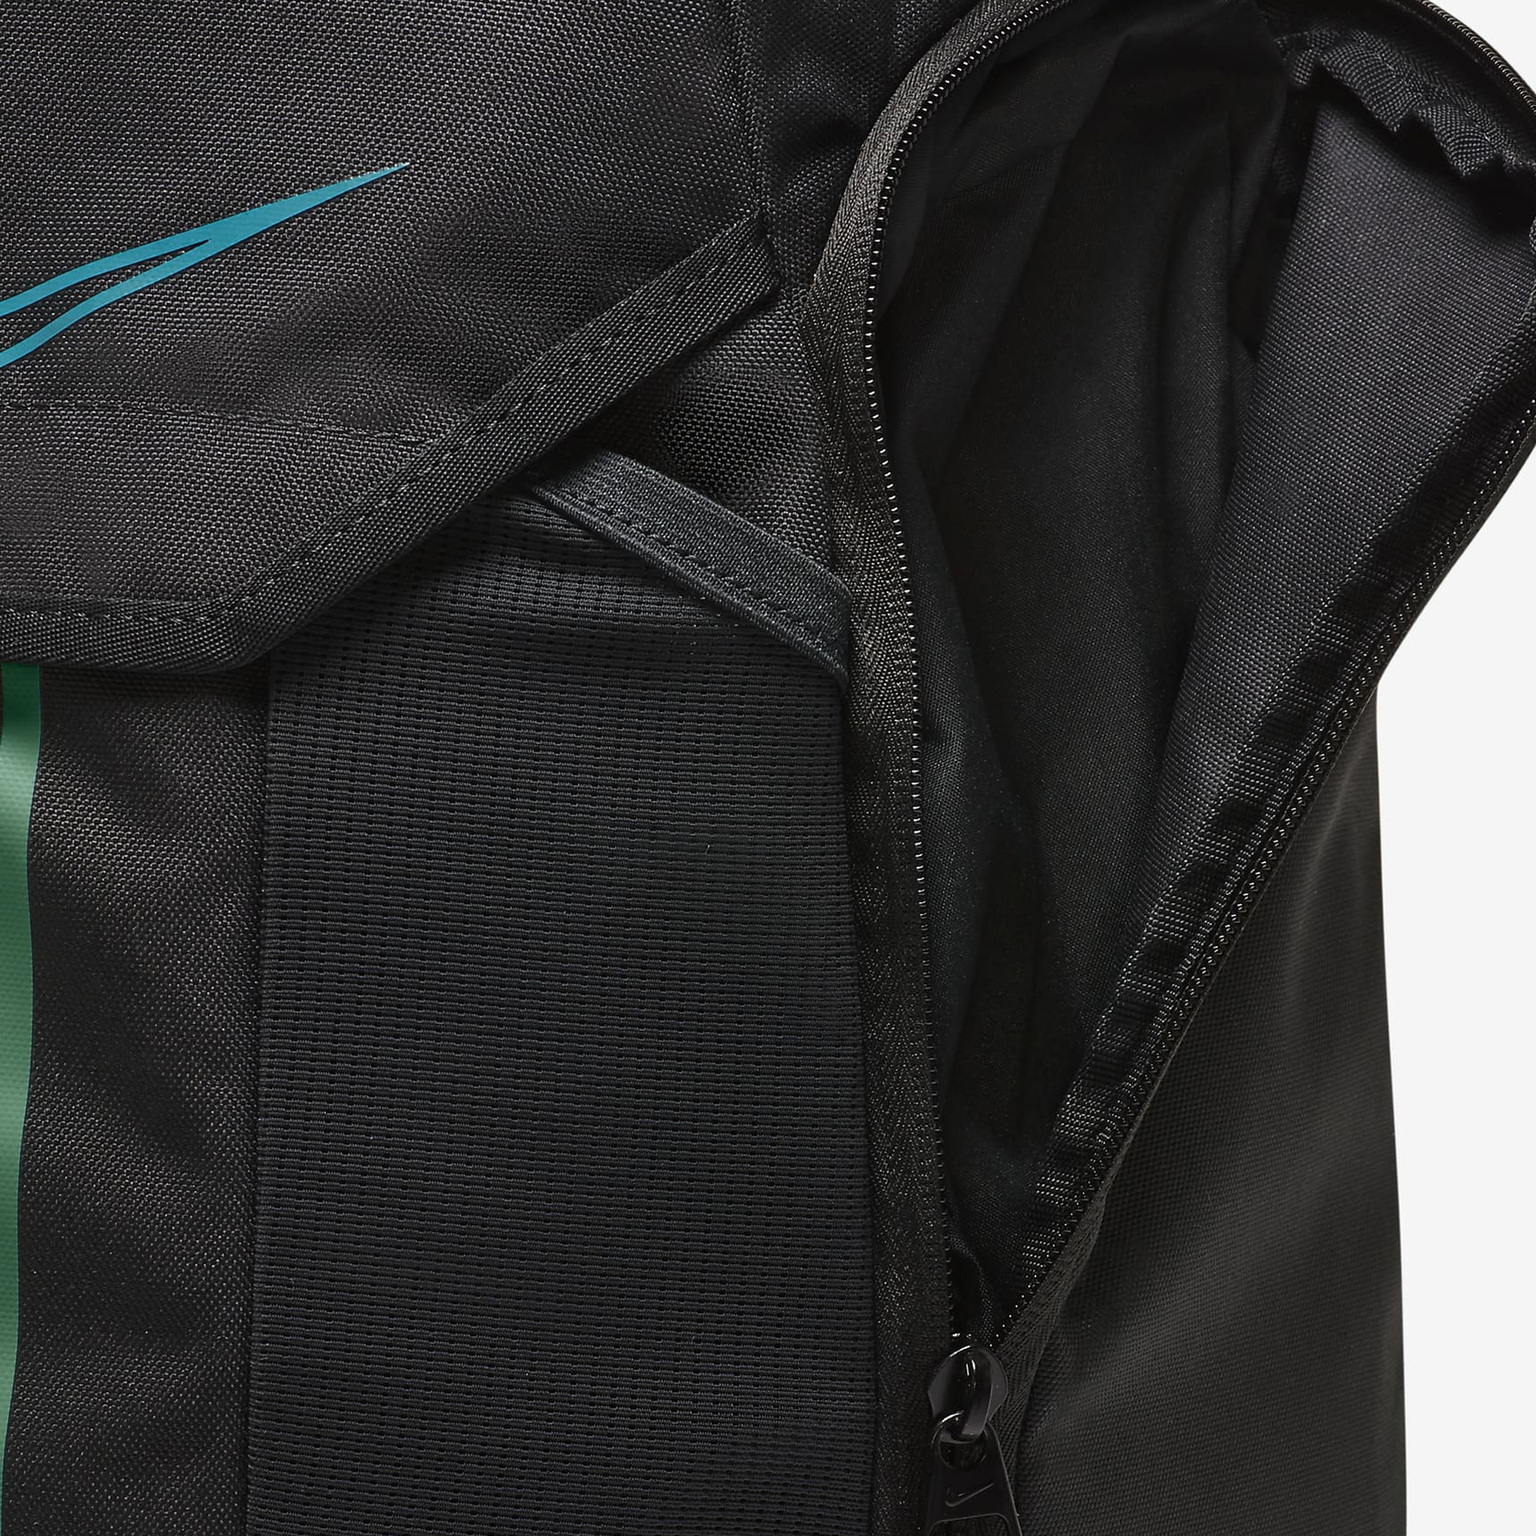 Рюкзак Nike Mercurial CU8168-020